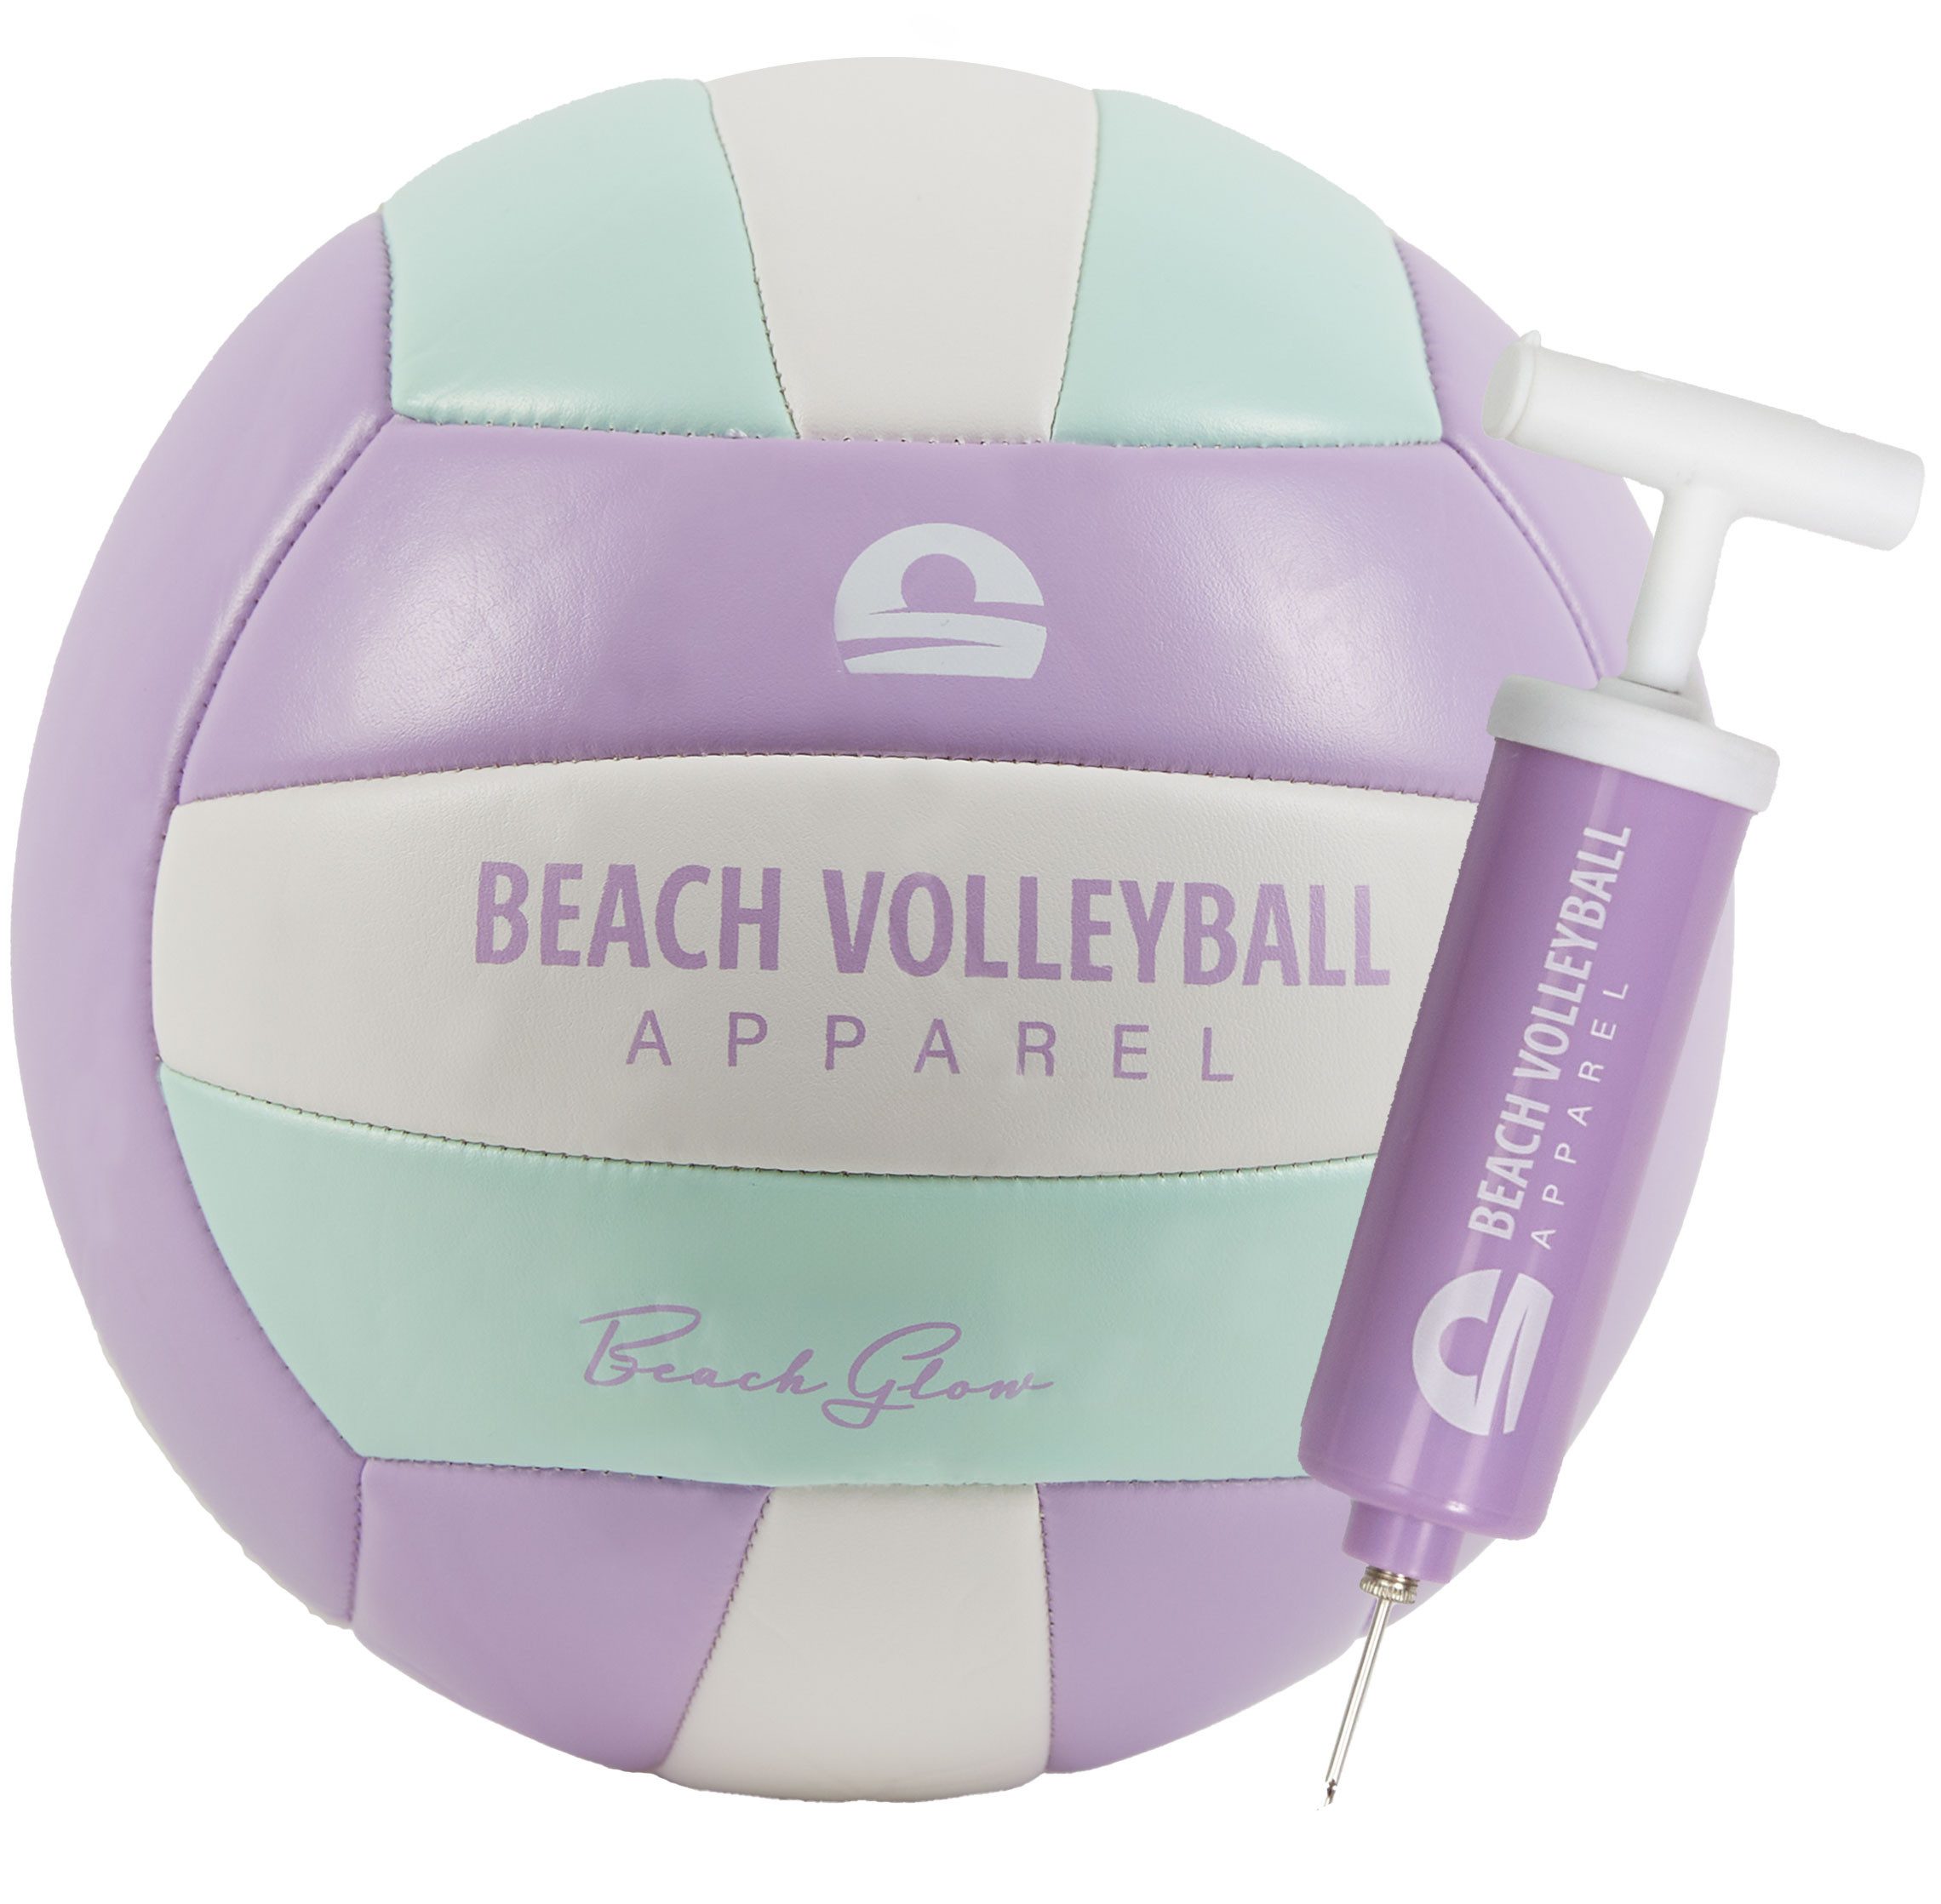 Beach Volleyball Apparel Beachvolleyball Beach Glow mit Ballpumpe und Geschenkbox, Größe 5